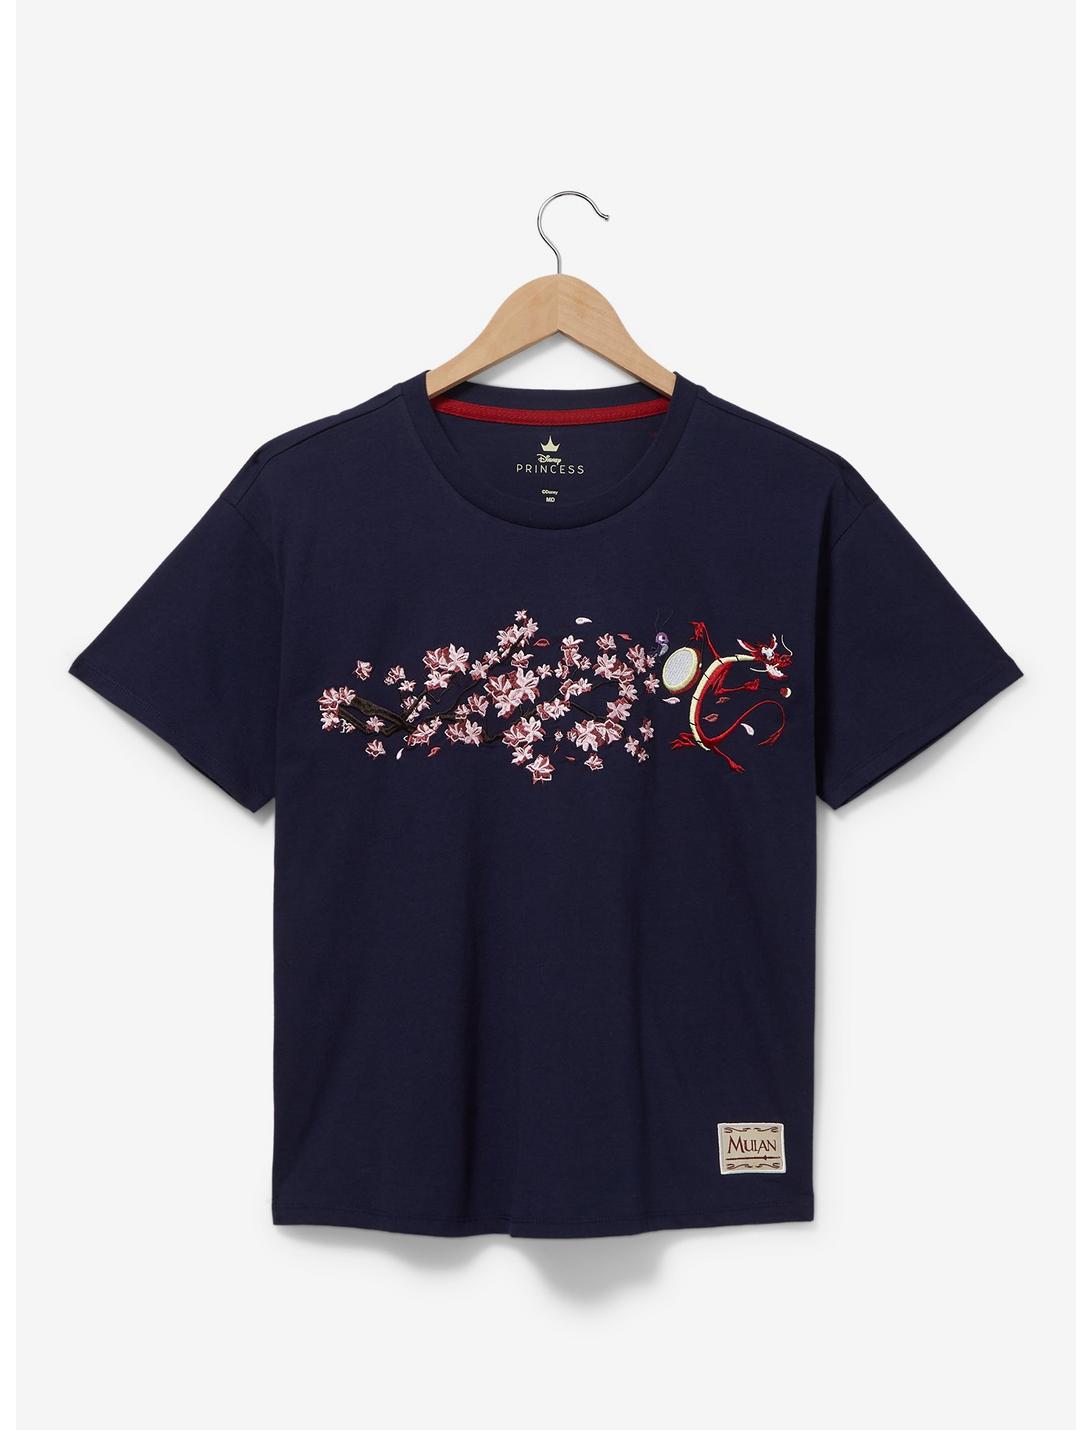 Disney Mulan Mushu Floral Women's T-Shirt - BoxLunch Exclusive | BoxLunch